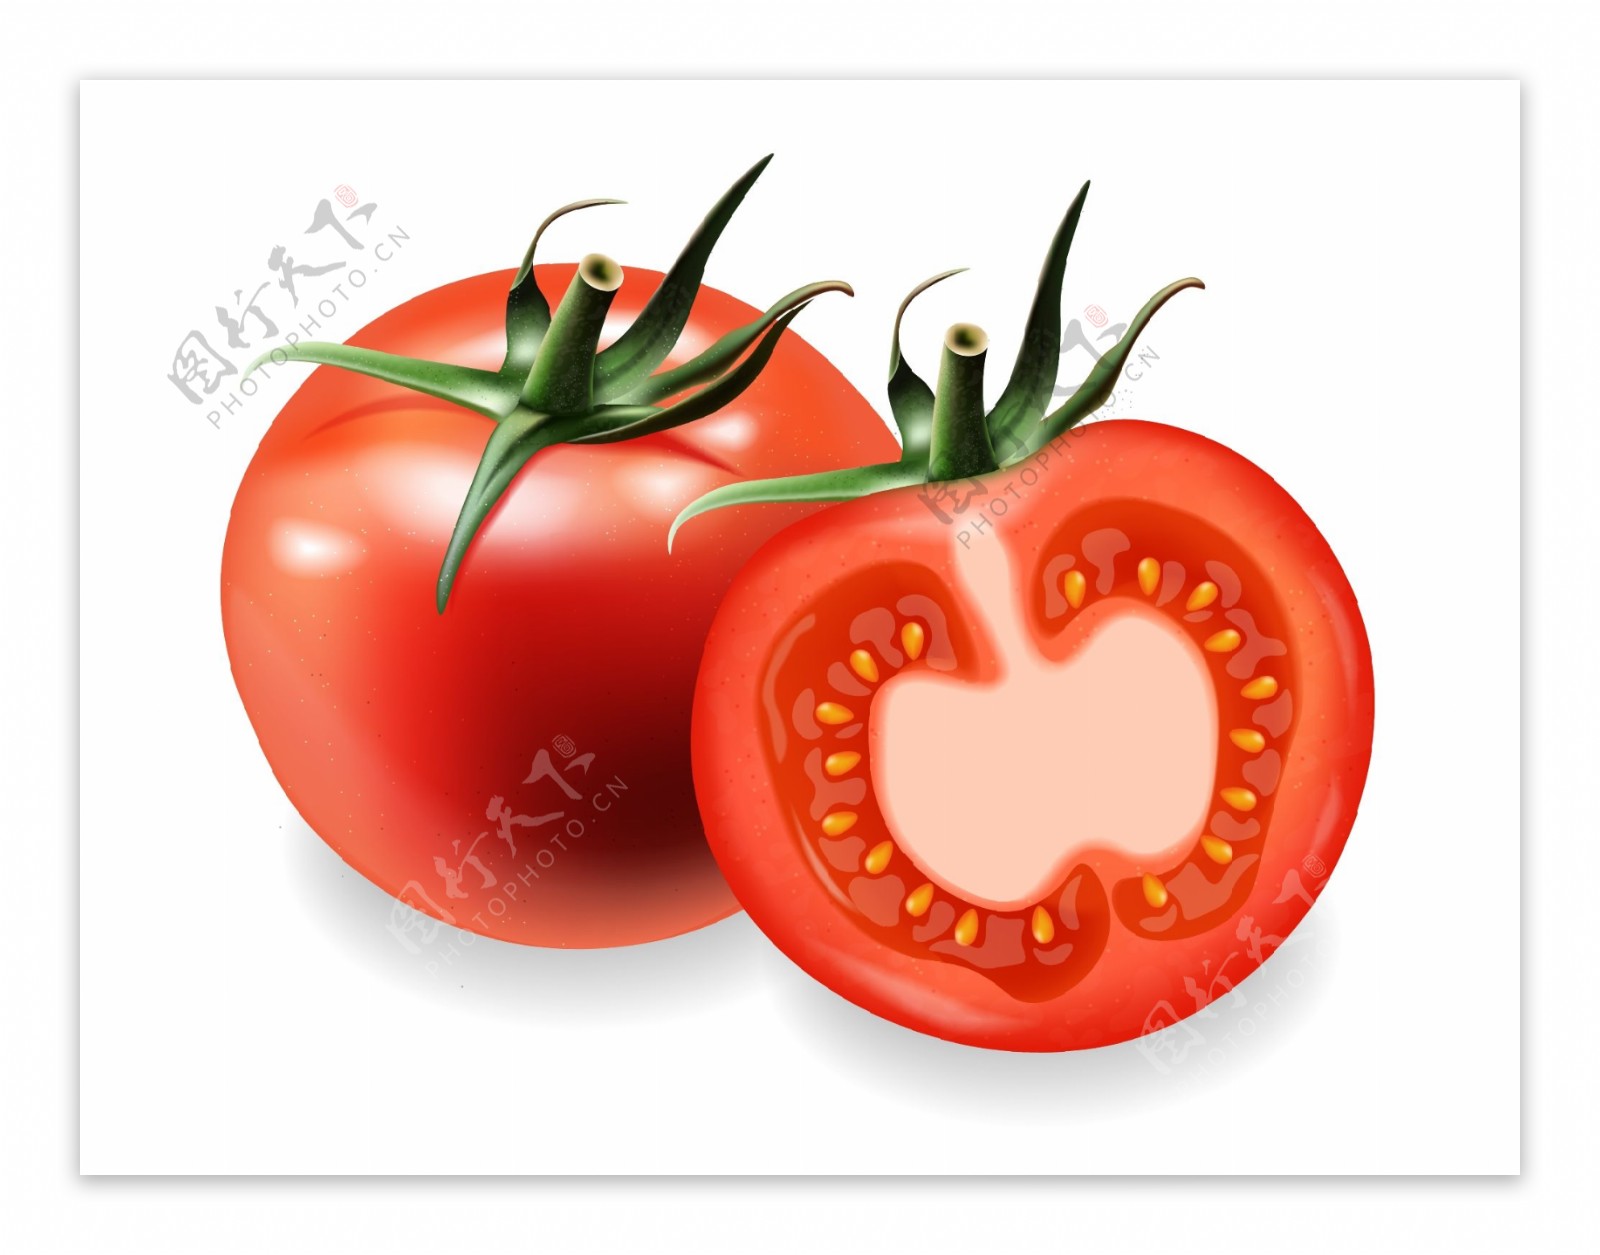 番茄汤广告西红柿制品